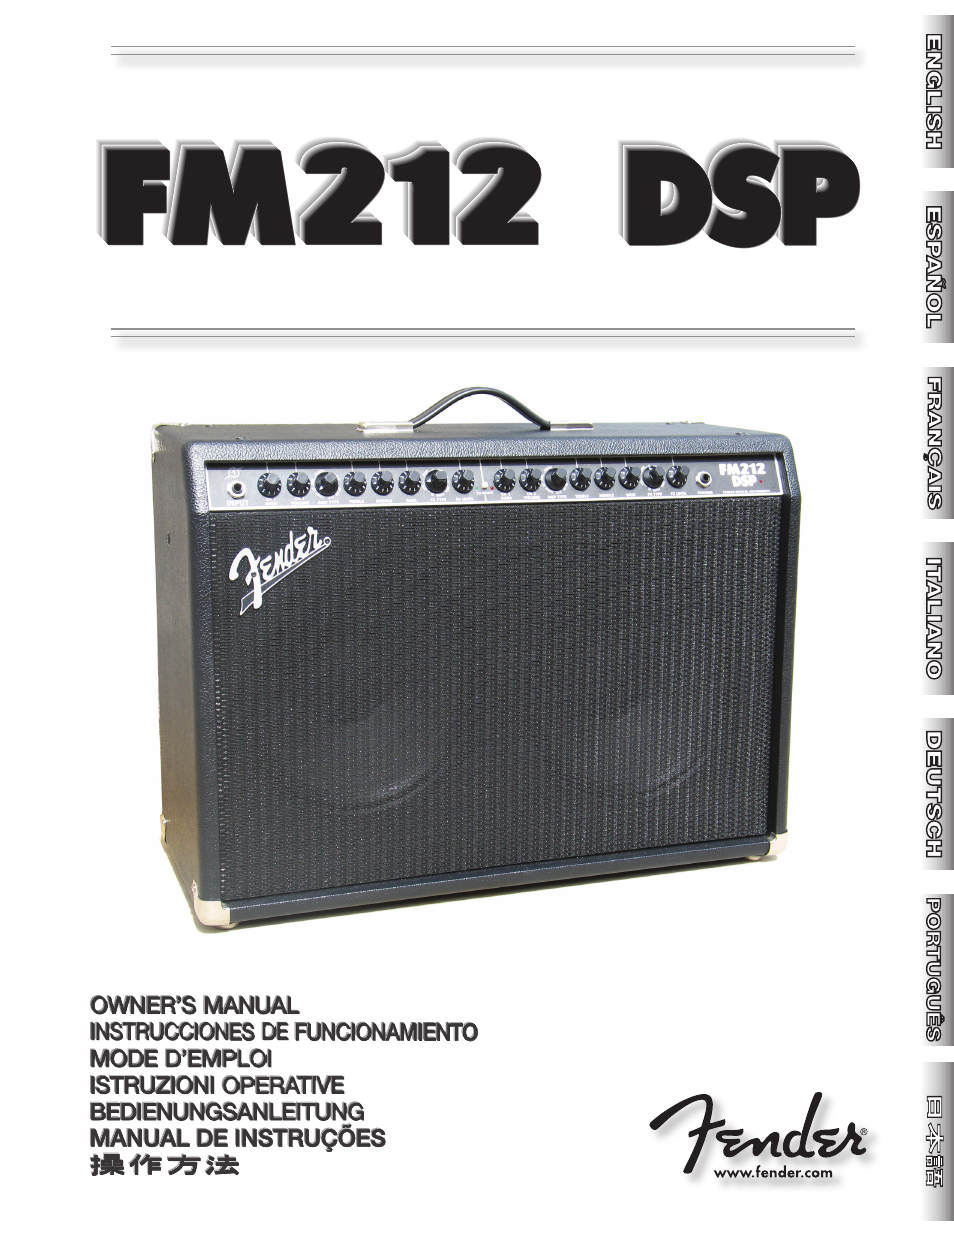 FM 212 DSP